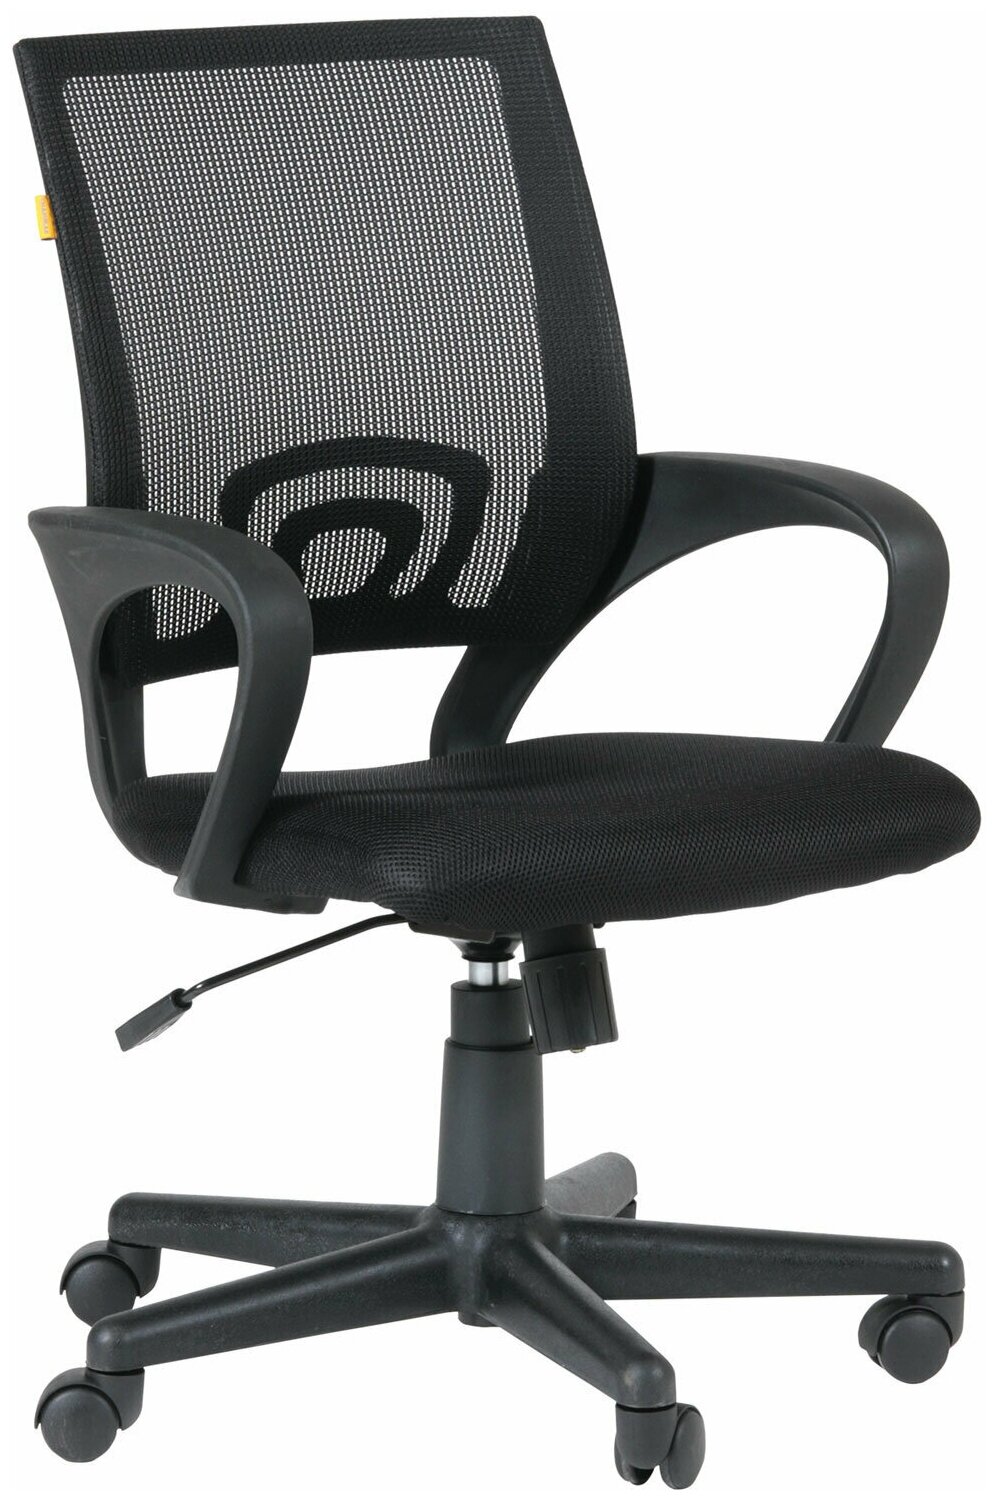 Кресло CH 696 с подлокотниками черное 7000799 - 1 шт.